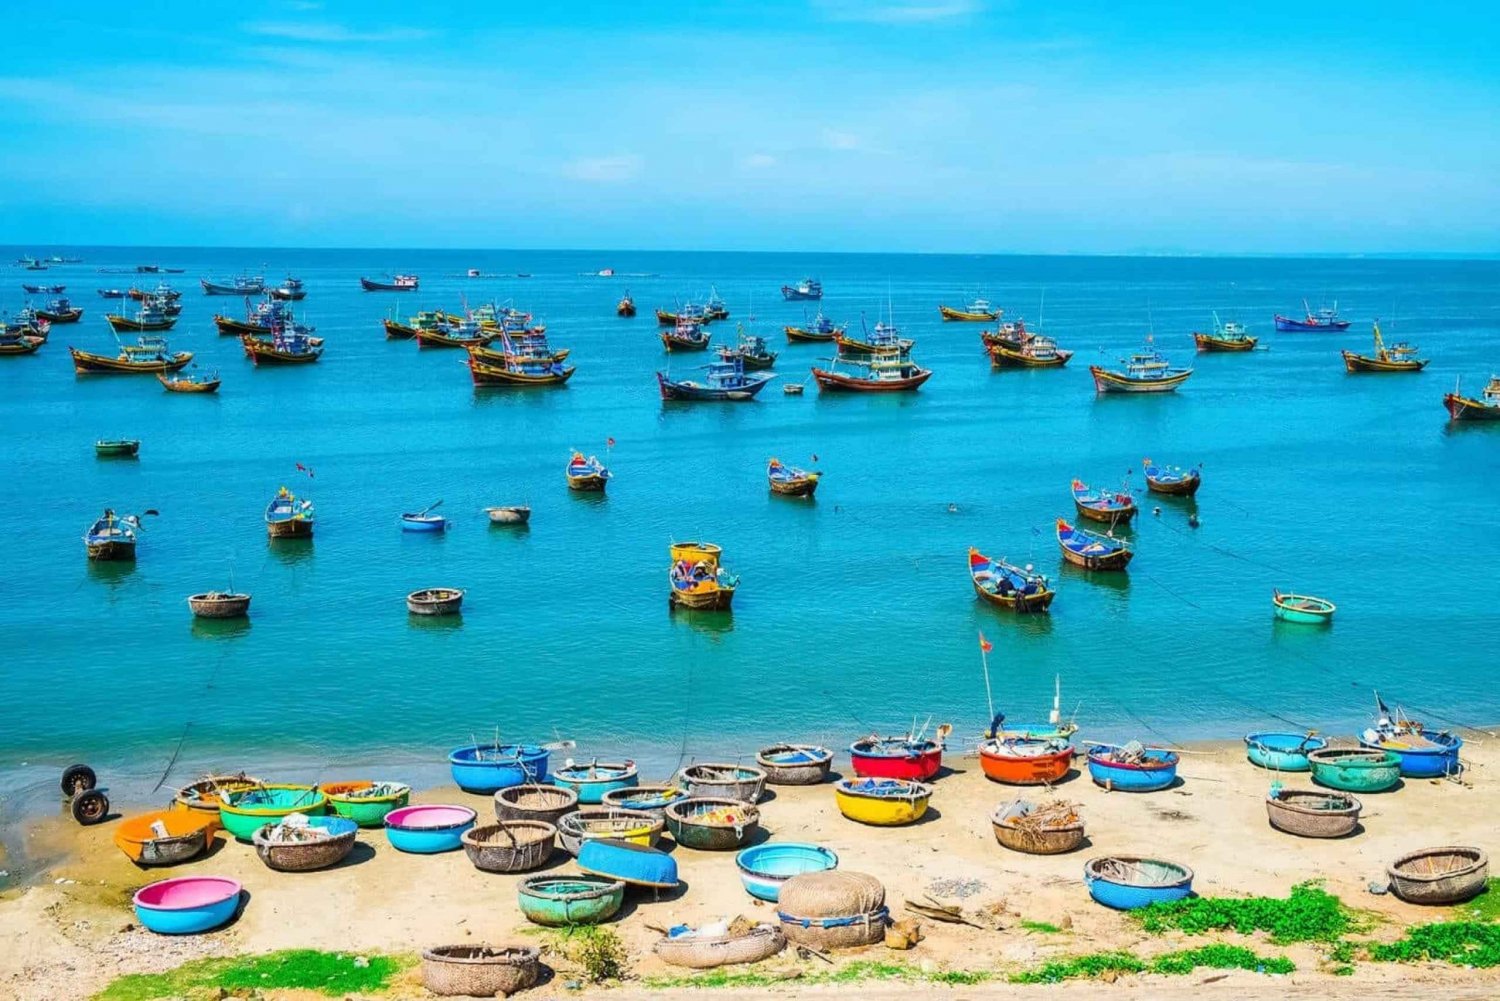 6 Días por el Sur de Vietnam | Delta del Mekong Cu Chi Mui Ne Phu Quoc